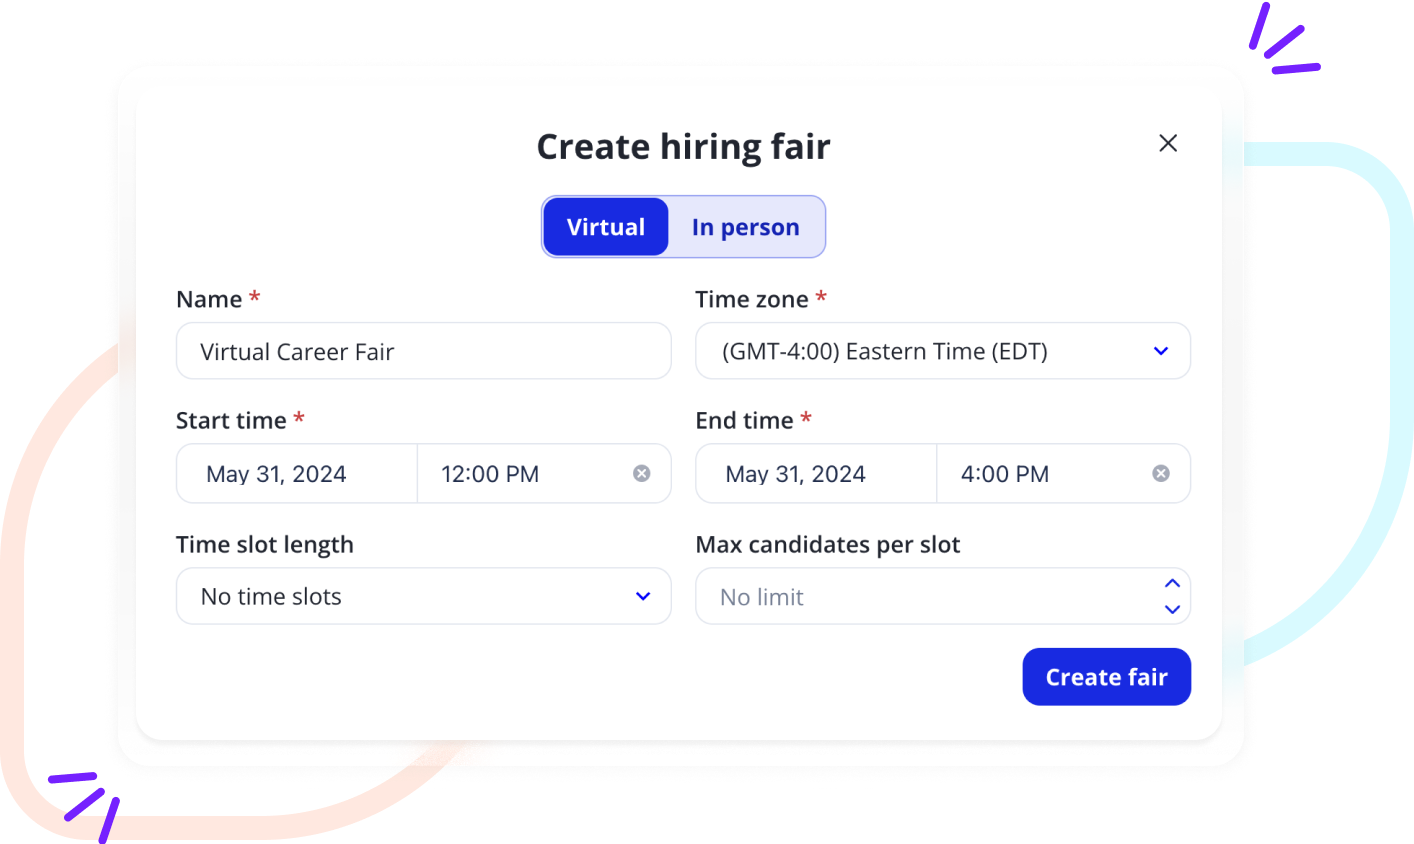 A fair organizer creates a career fair on the Withe career fair software